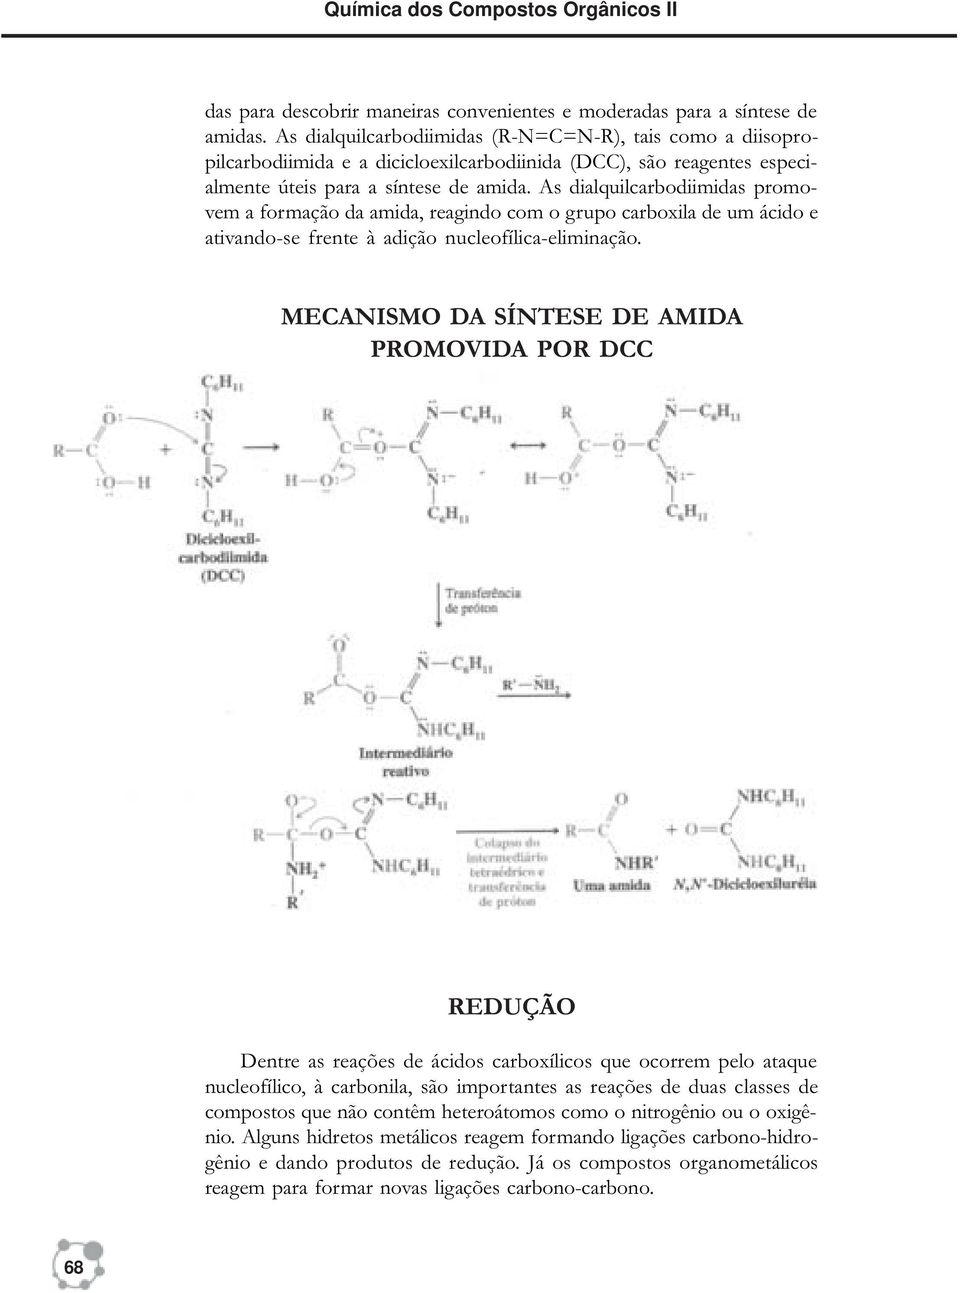 As dialquilcarbodiimidas promovem a formação da amida, reagindo com o grupo carboxila de um ácido e ativando-se frente à adição nucleofílica-eliminação.